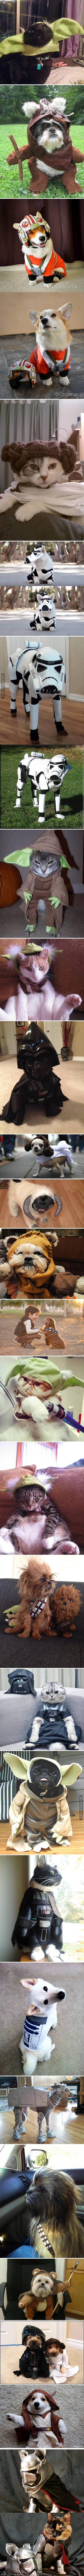 Psy i koty w kostiumach z Gwiezdnych Wojen